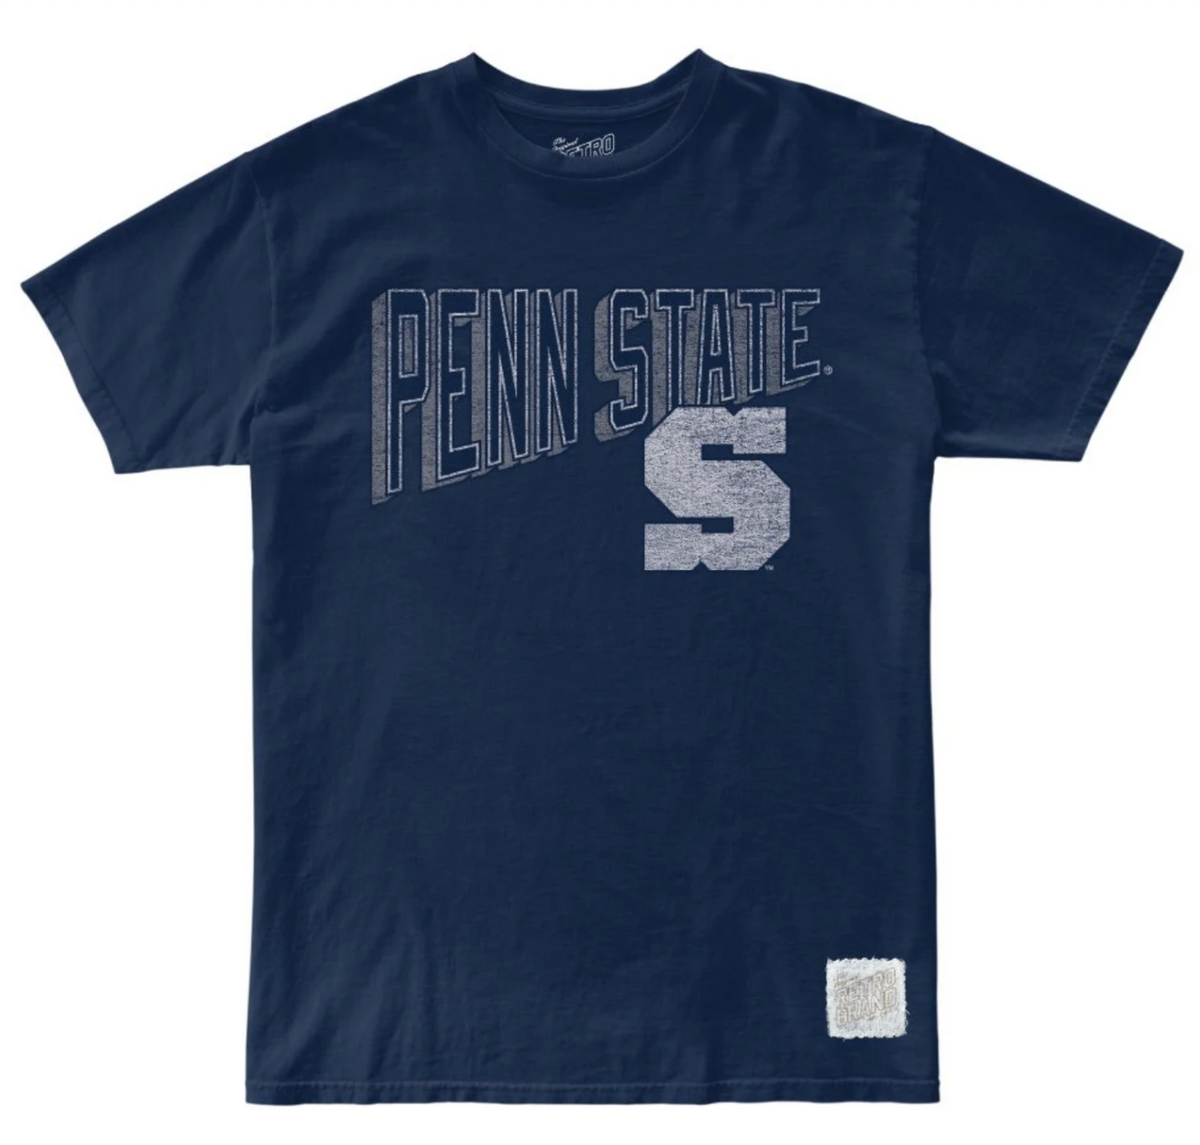 Penn State 100% Cotton Tee